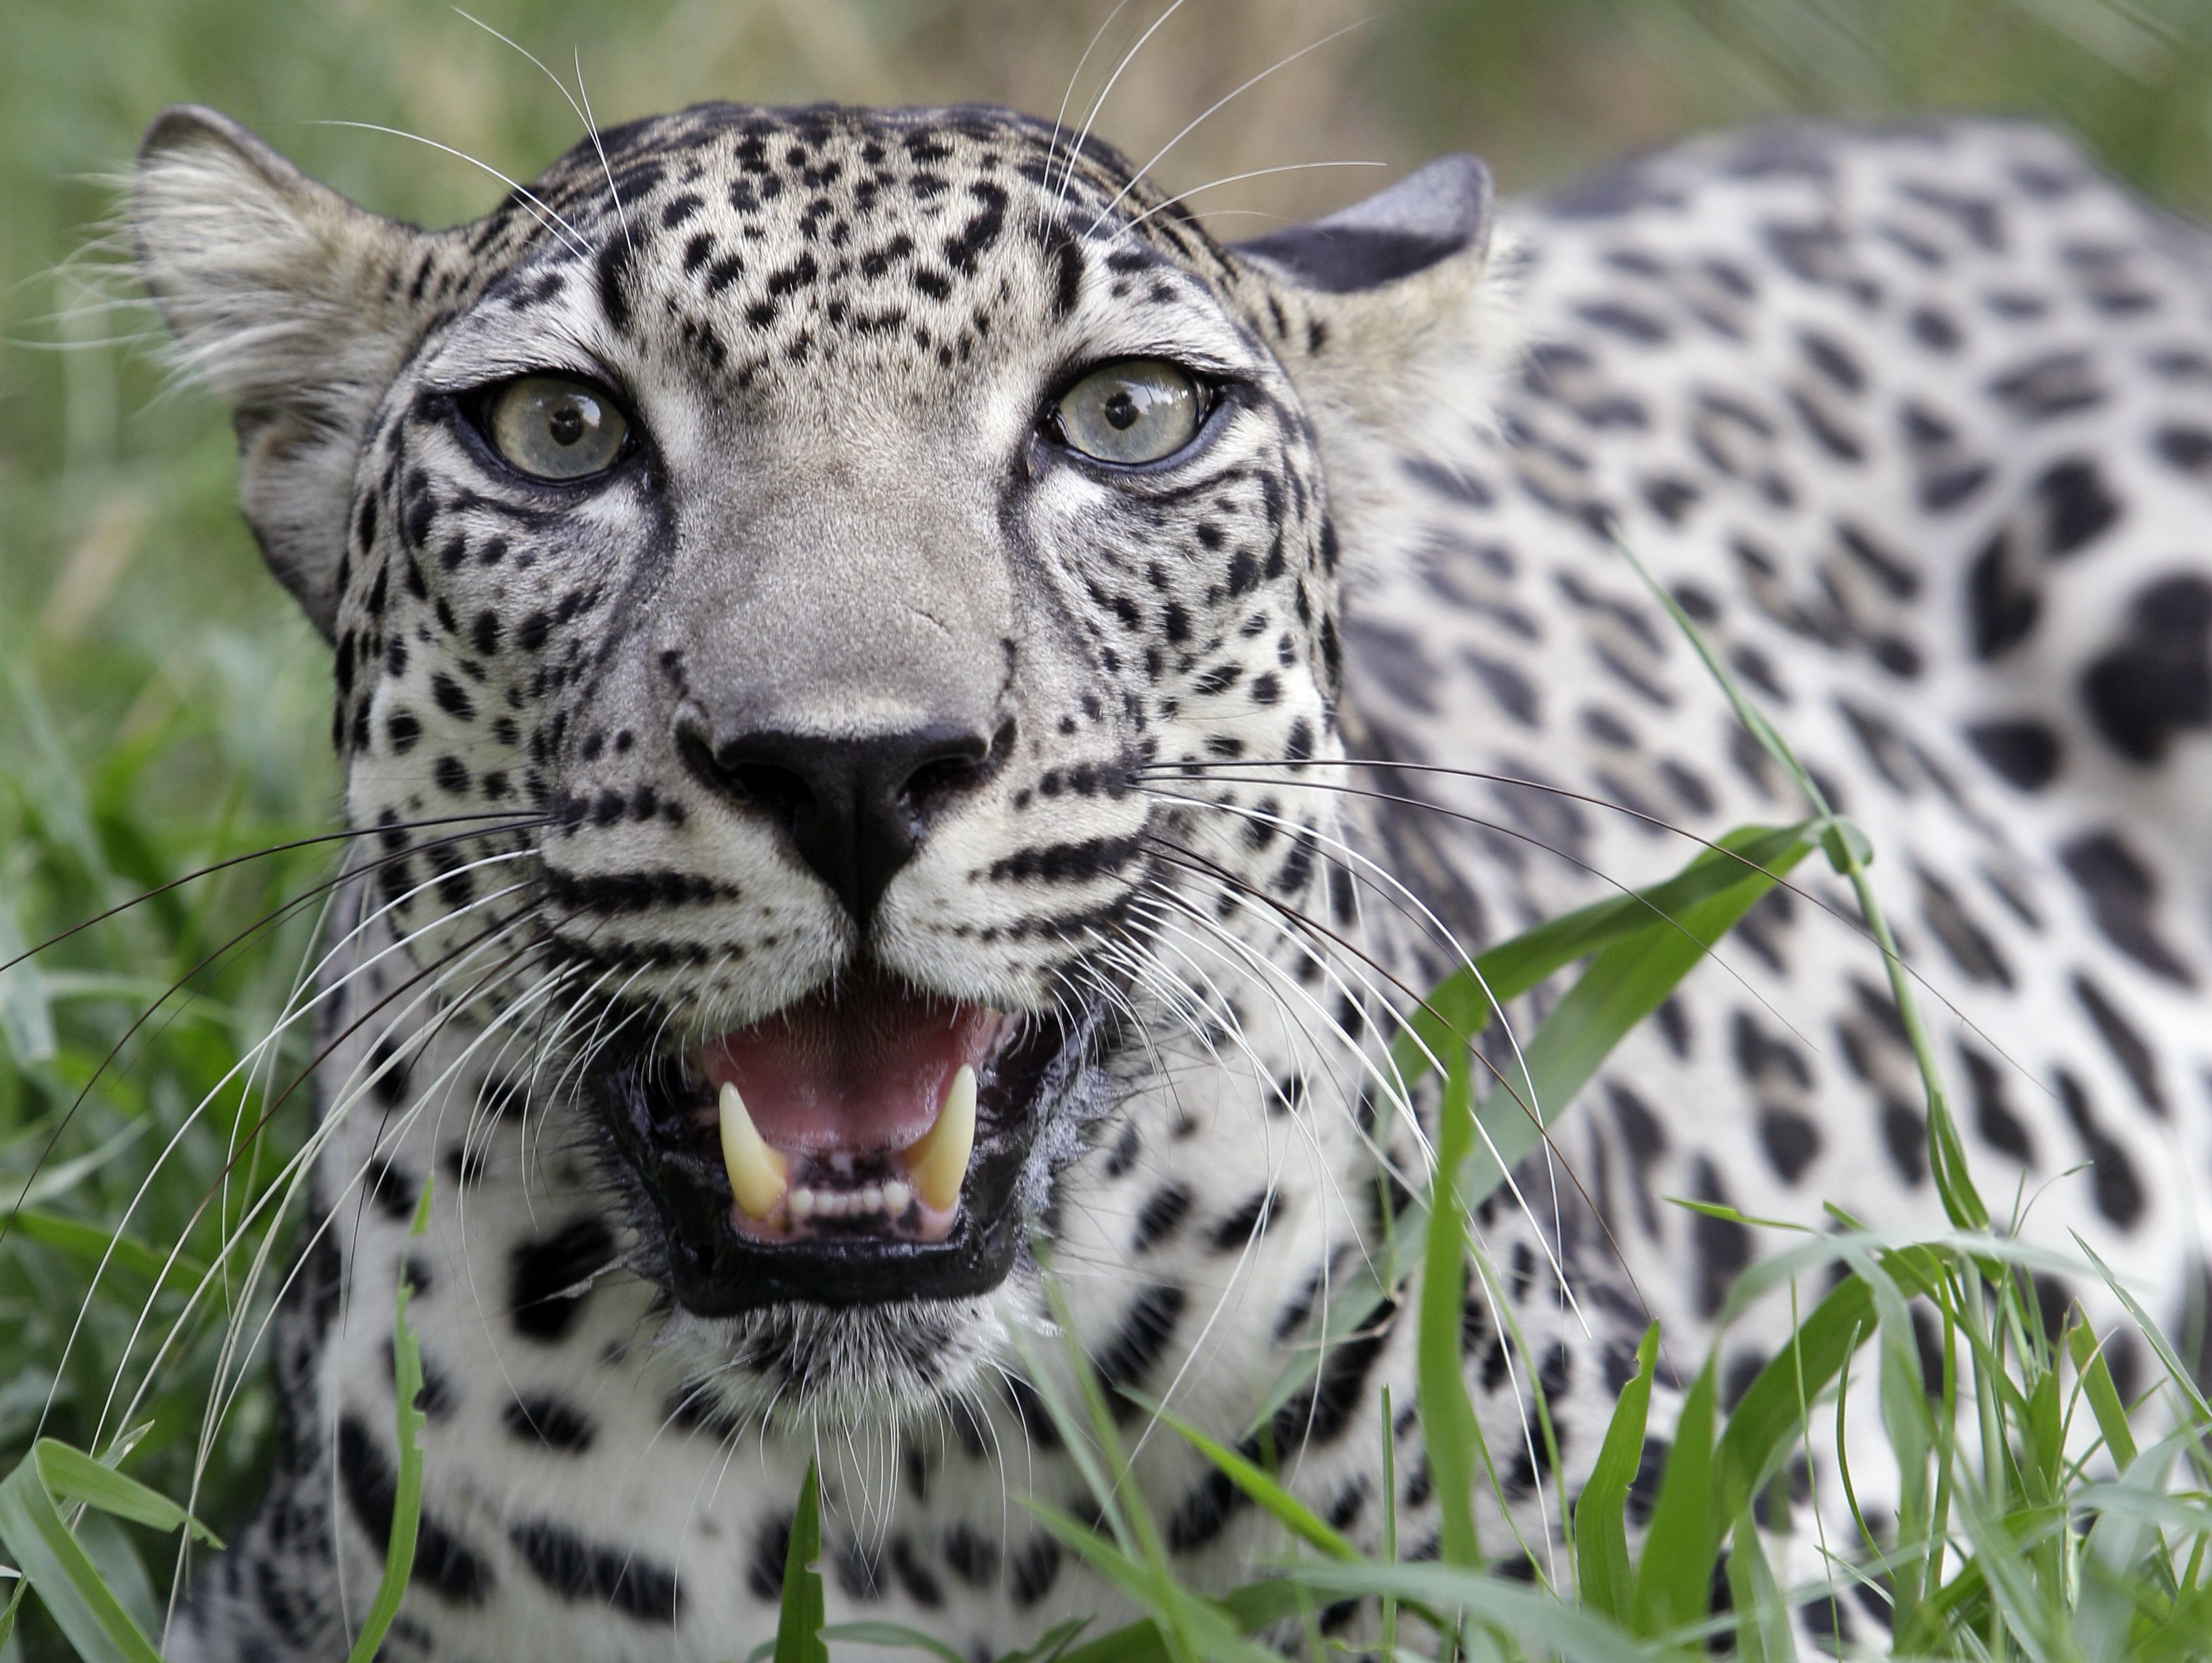 arabian leopard